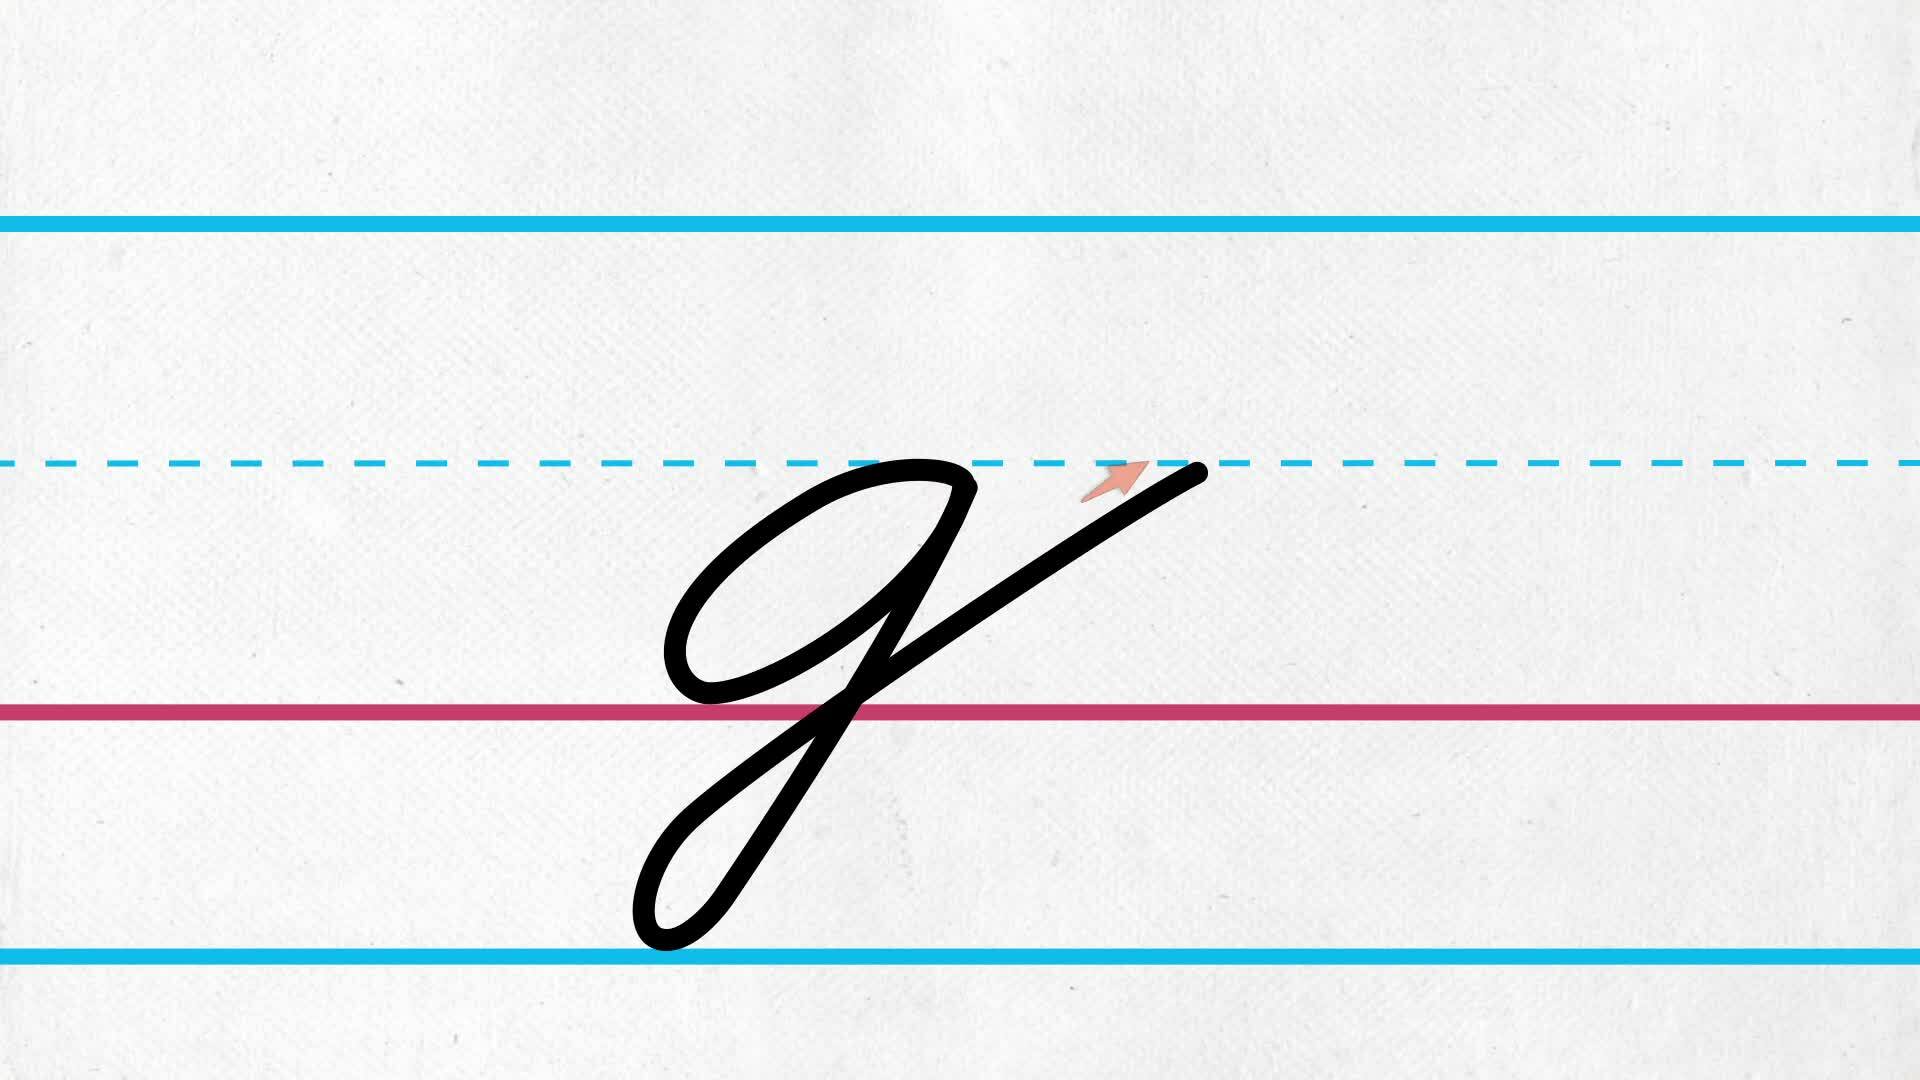 Lowercase Cursive Letter g